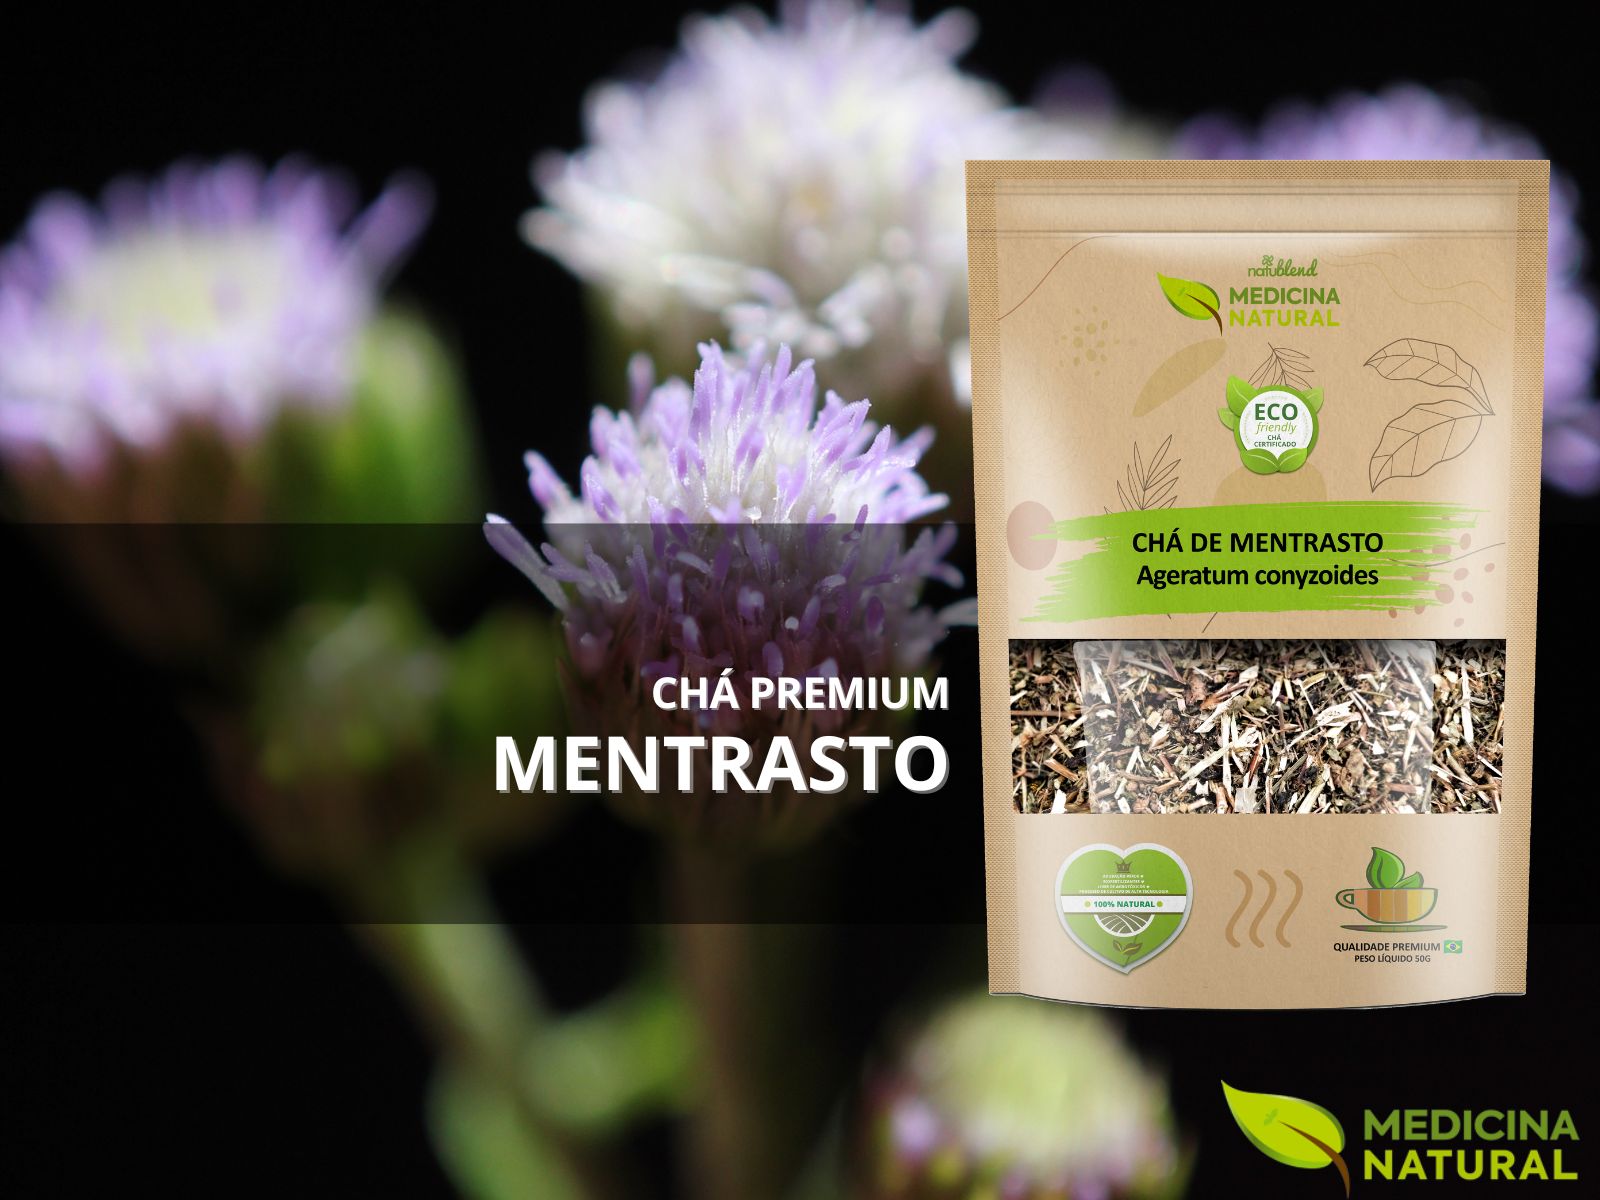 Chá de Mentrasto - Ageratum conyzoides - Medicina Natural